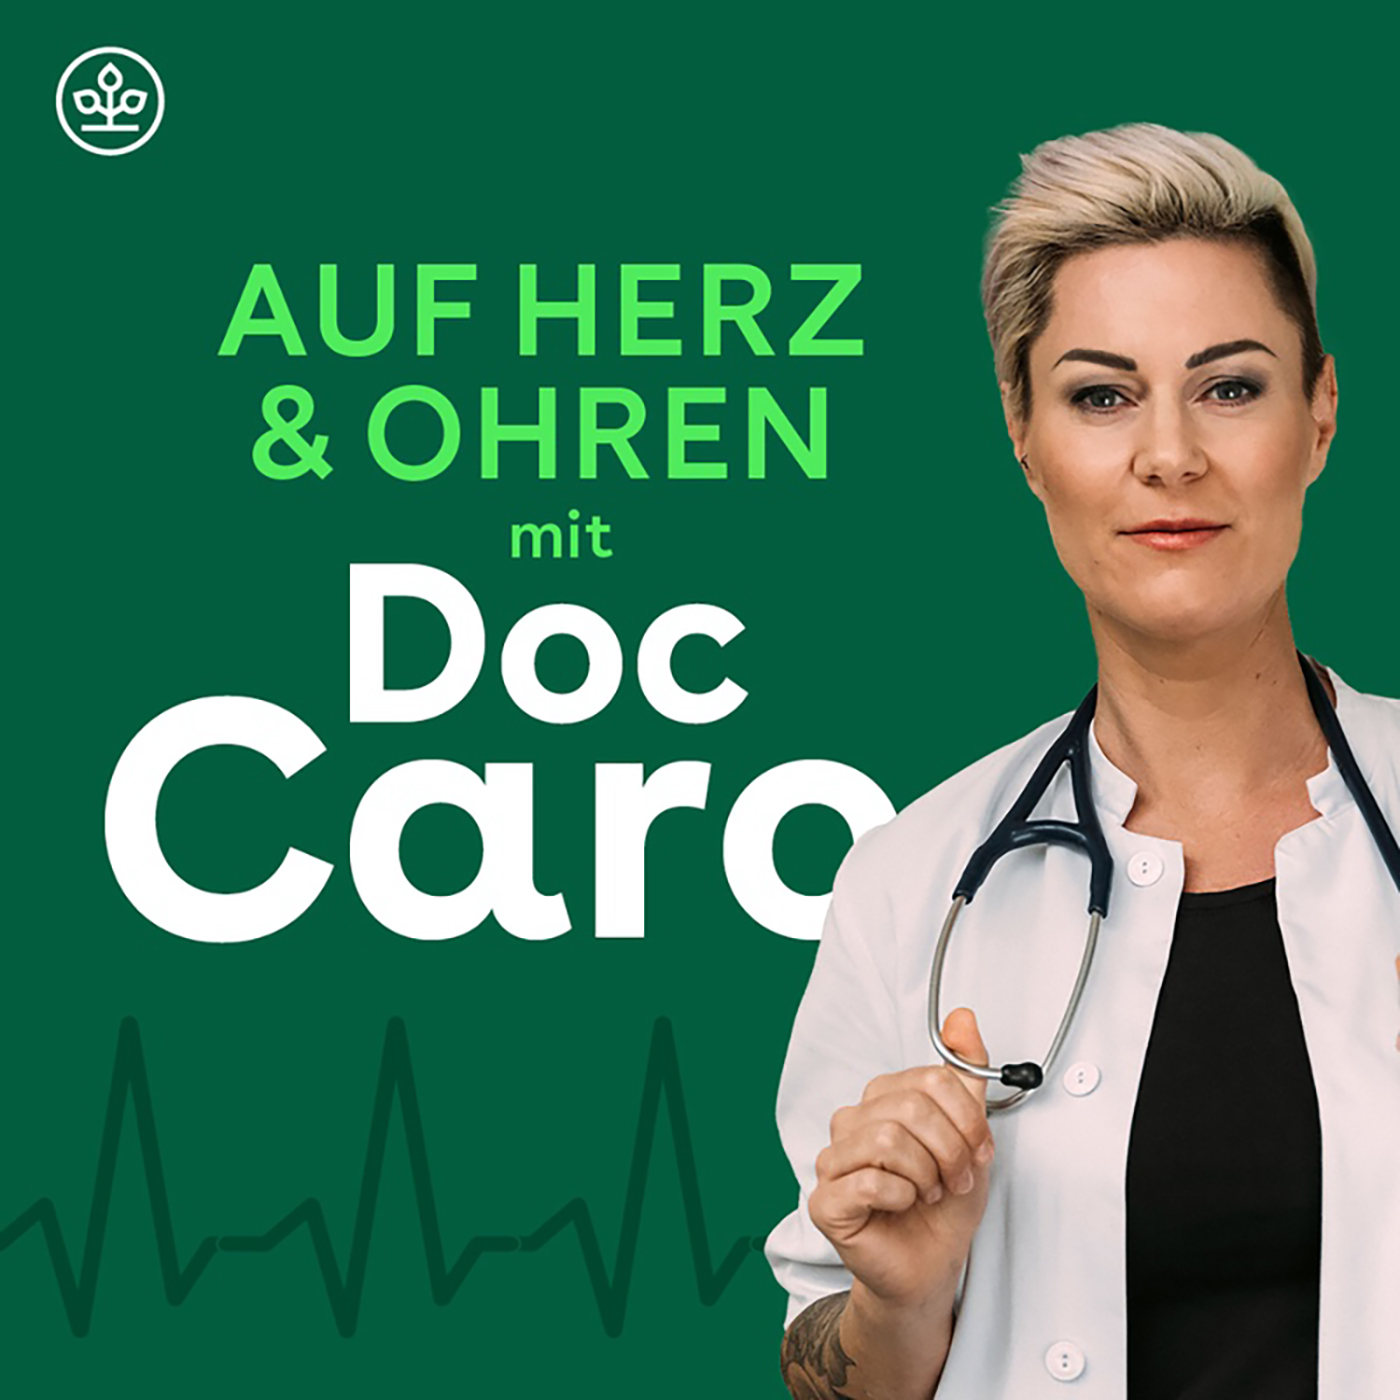 Auf Herz & Ohren mit Doc Caro – Psychosomatik: Ist das nur in meinem Kopf?